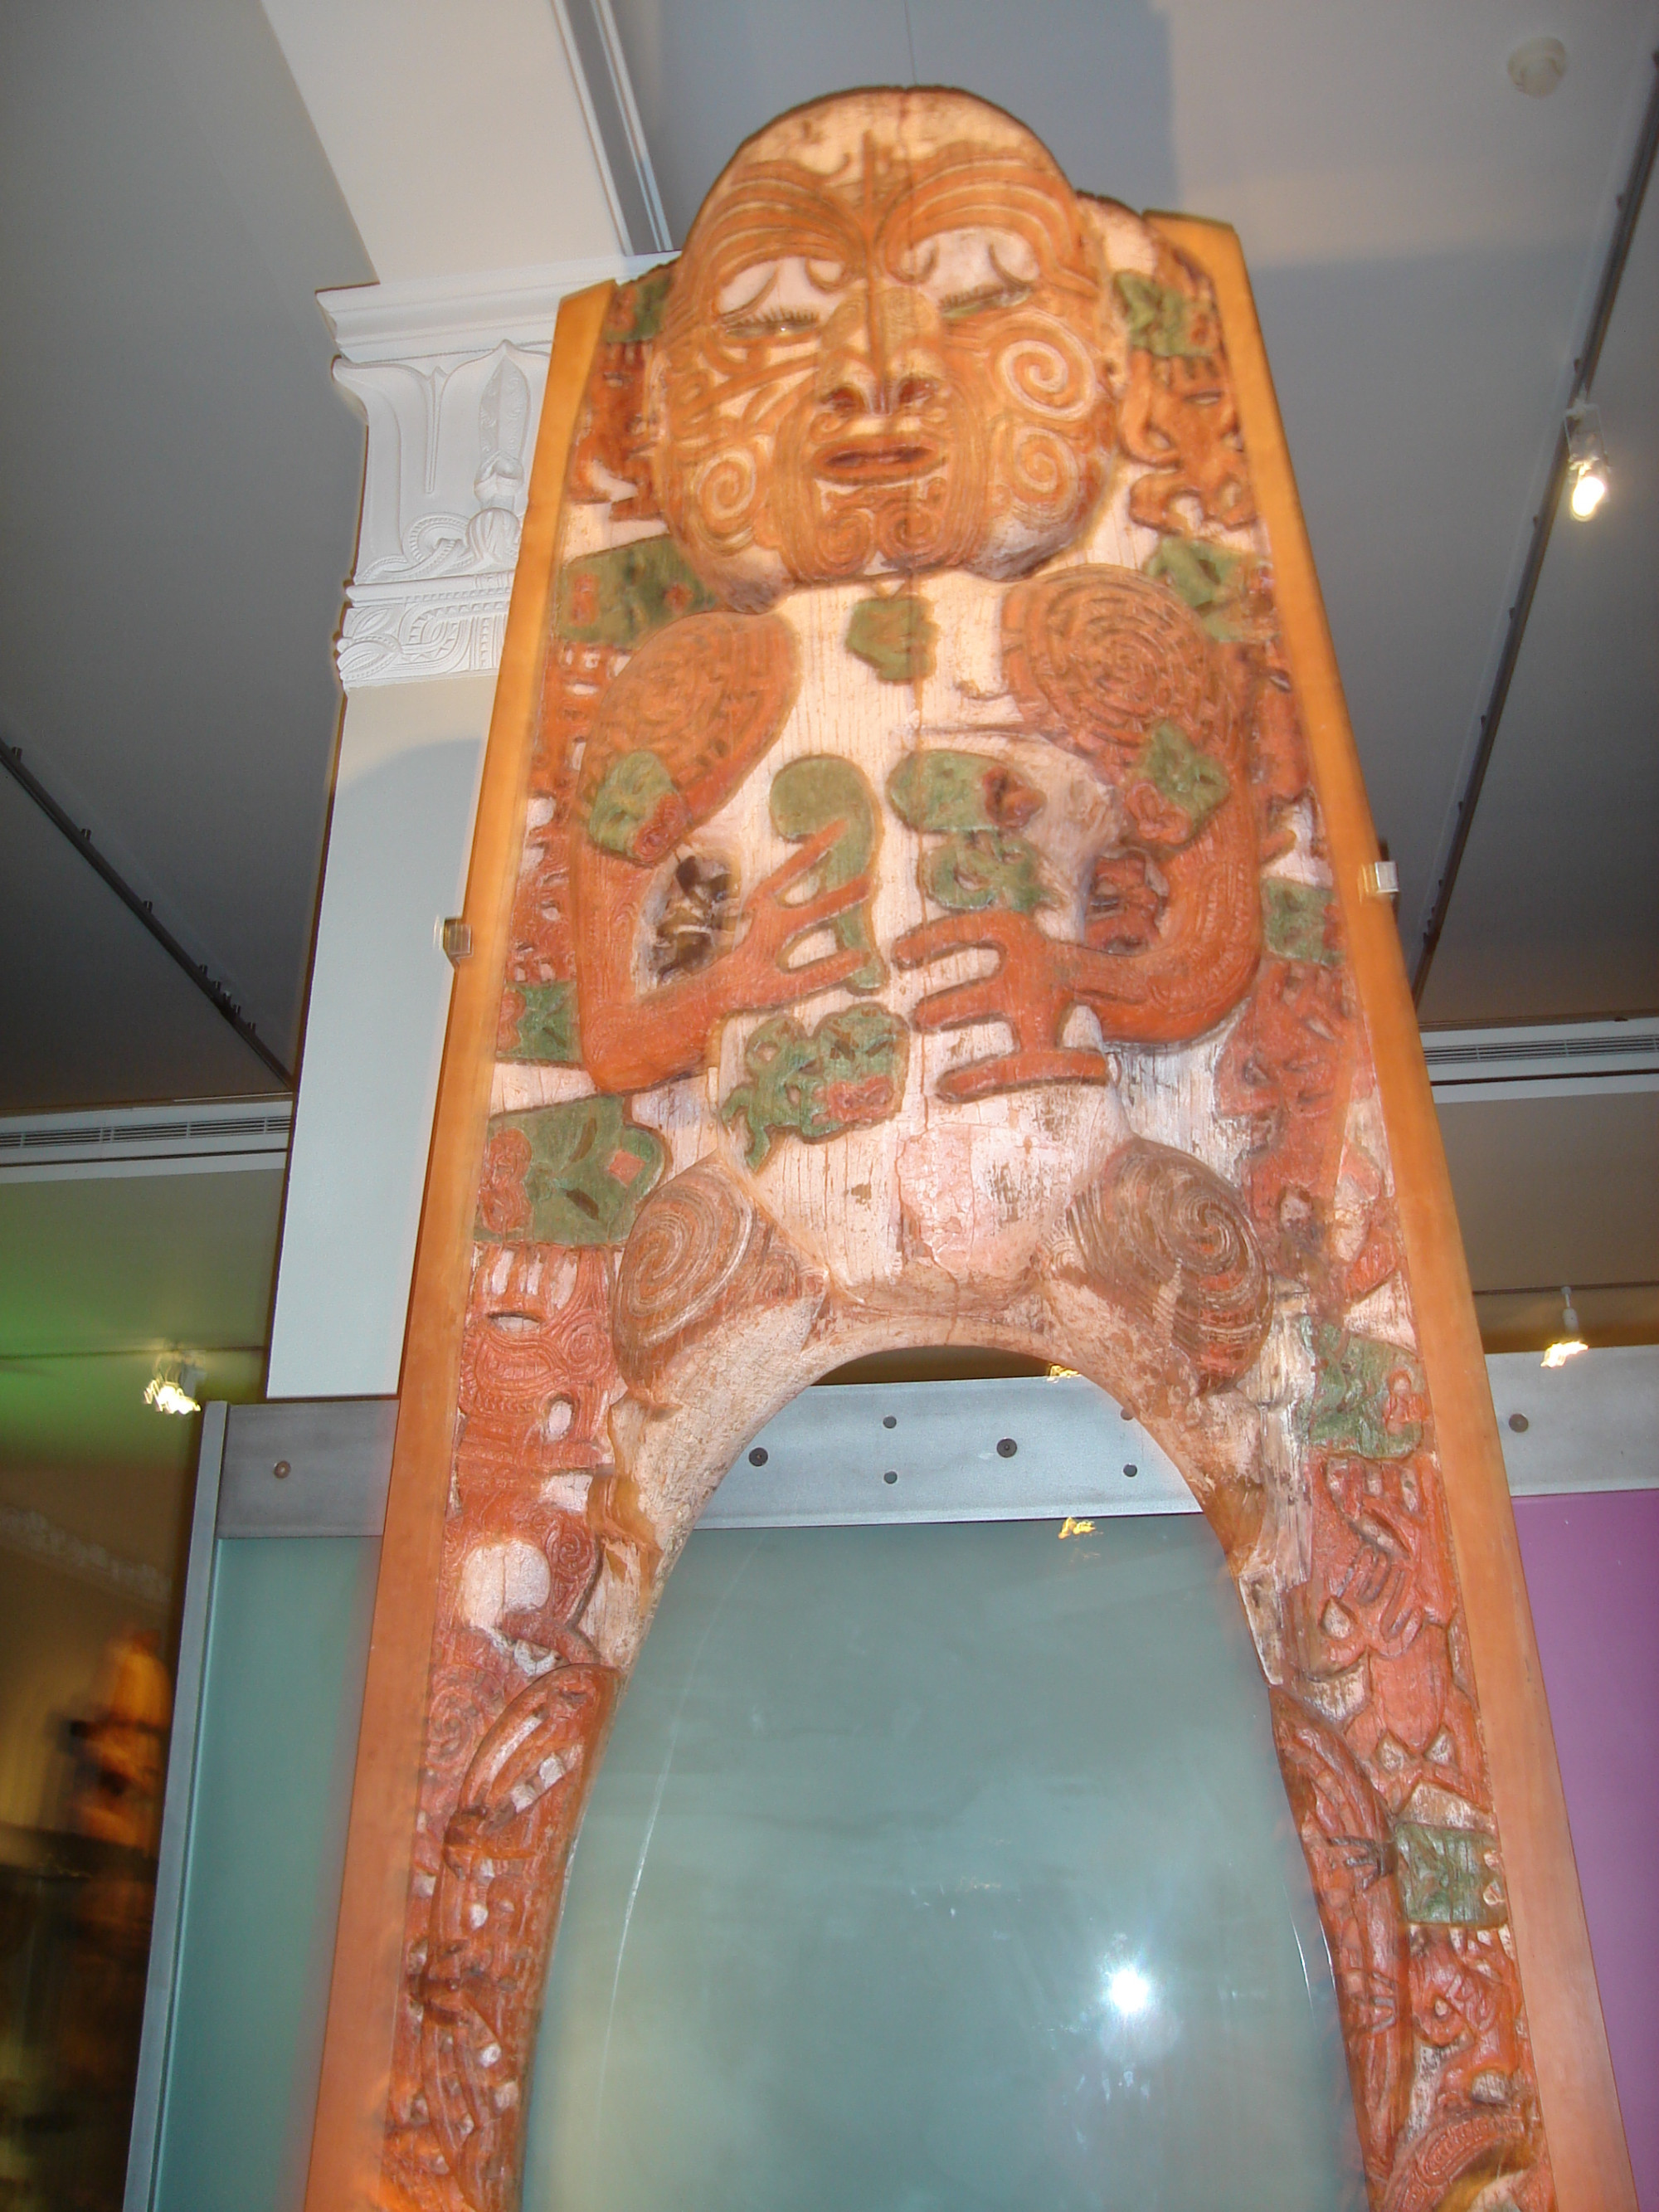 Gateway Tiki Carving Auckland War Memorial Museum,